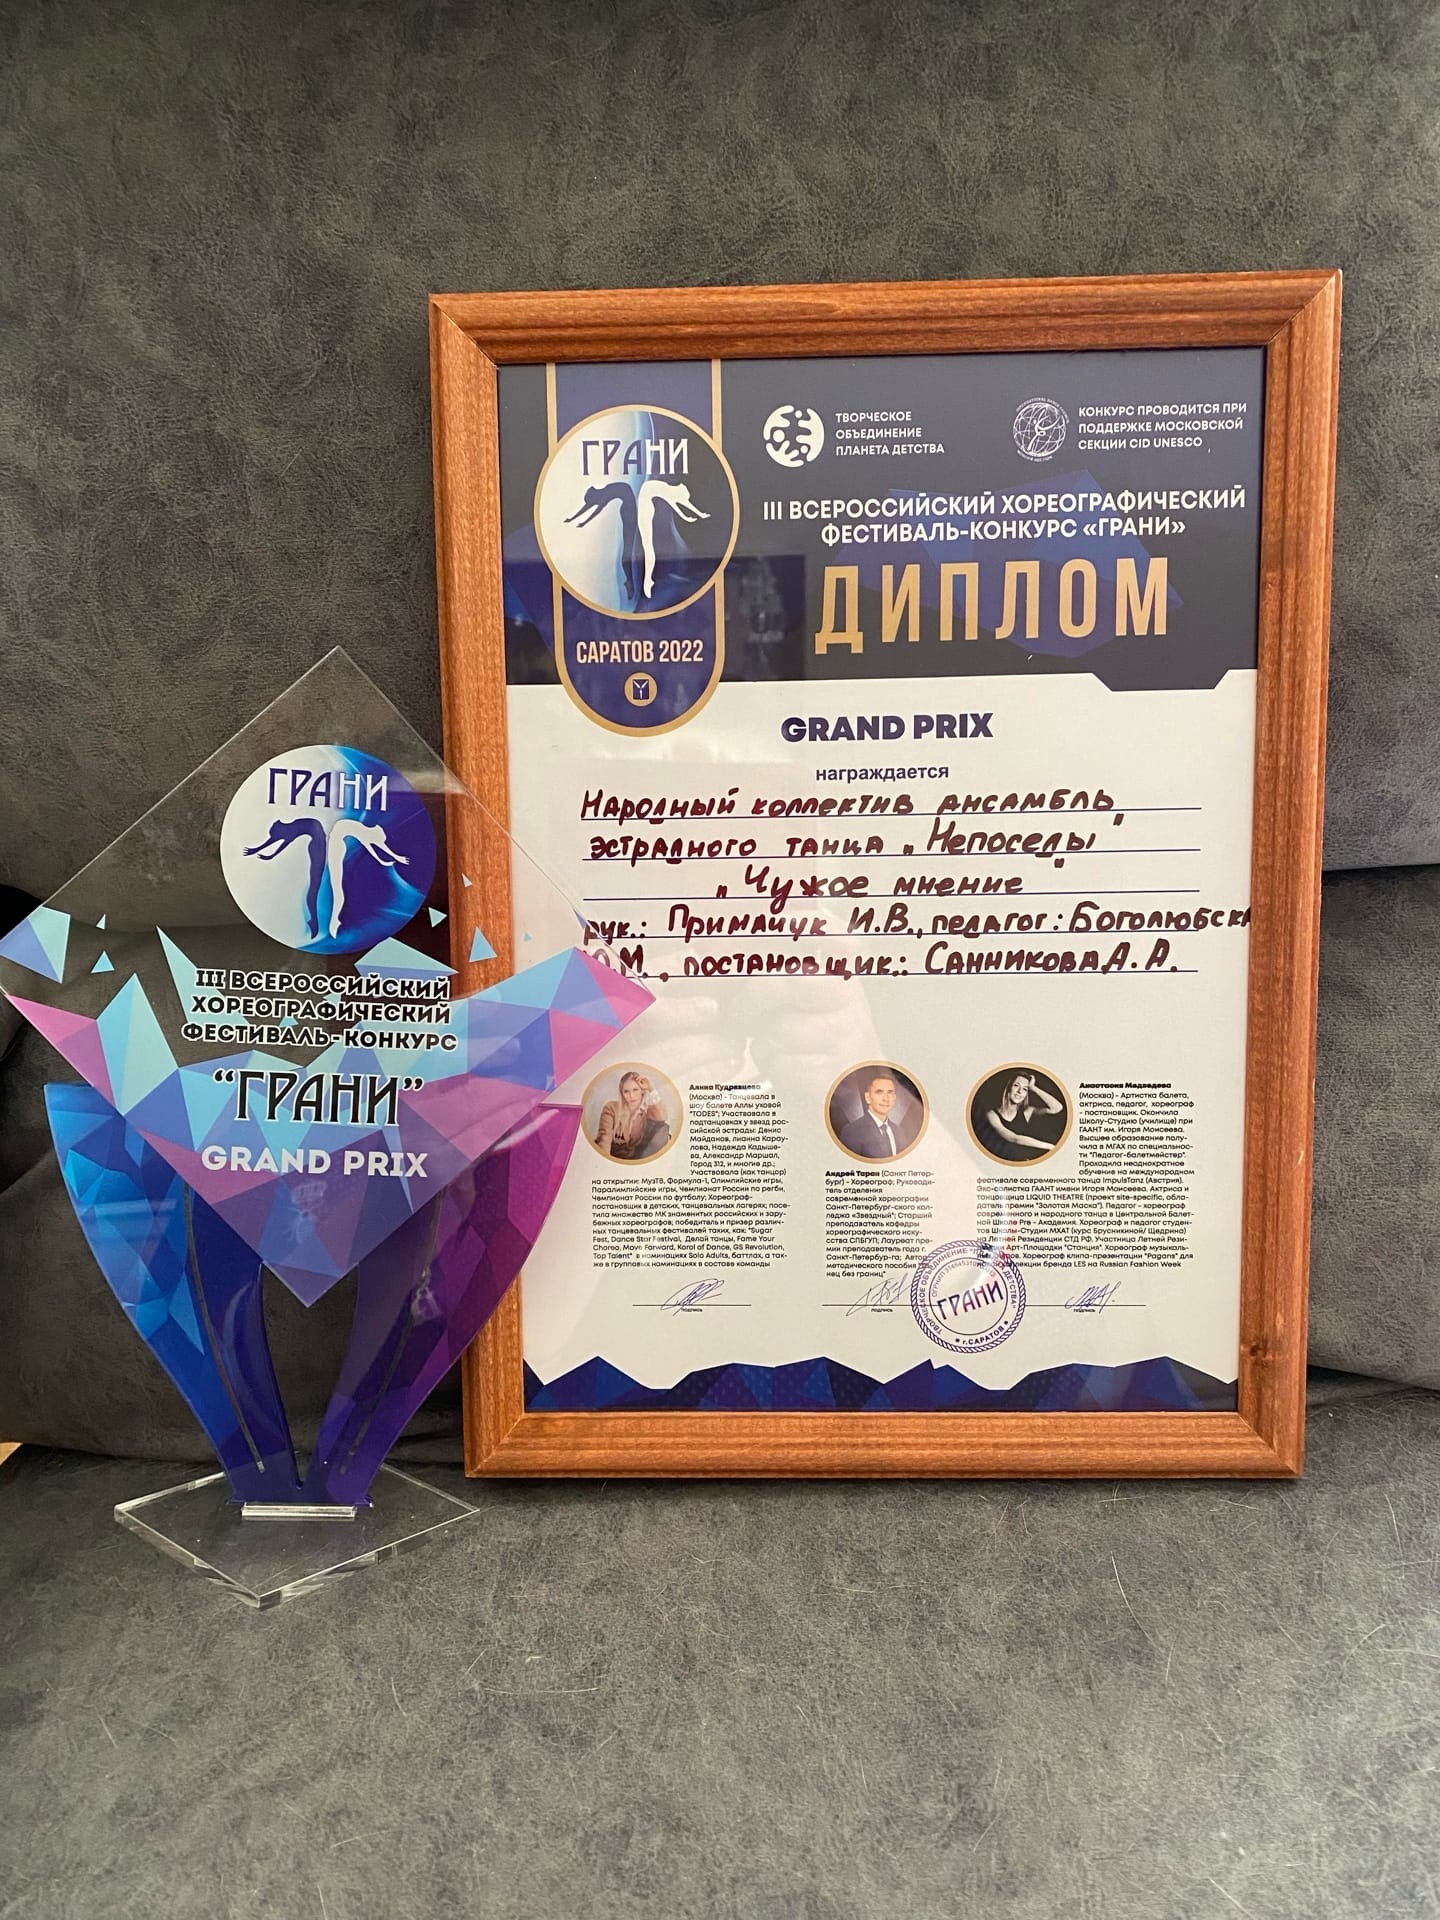 Ансамбль «Непоседы» завоевали Гран-при на Всероссийском хореографическом фестивале-конкурсе «Грани»